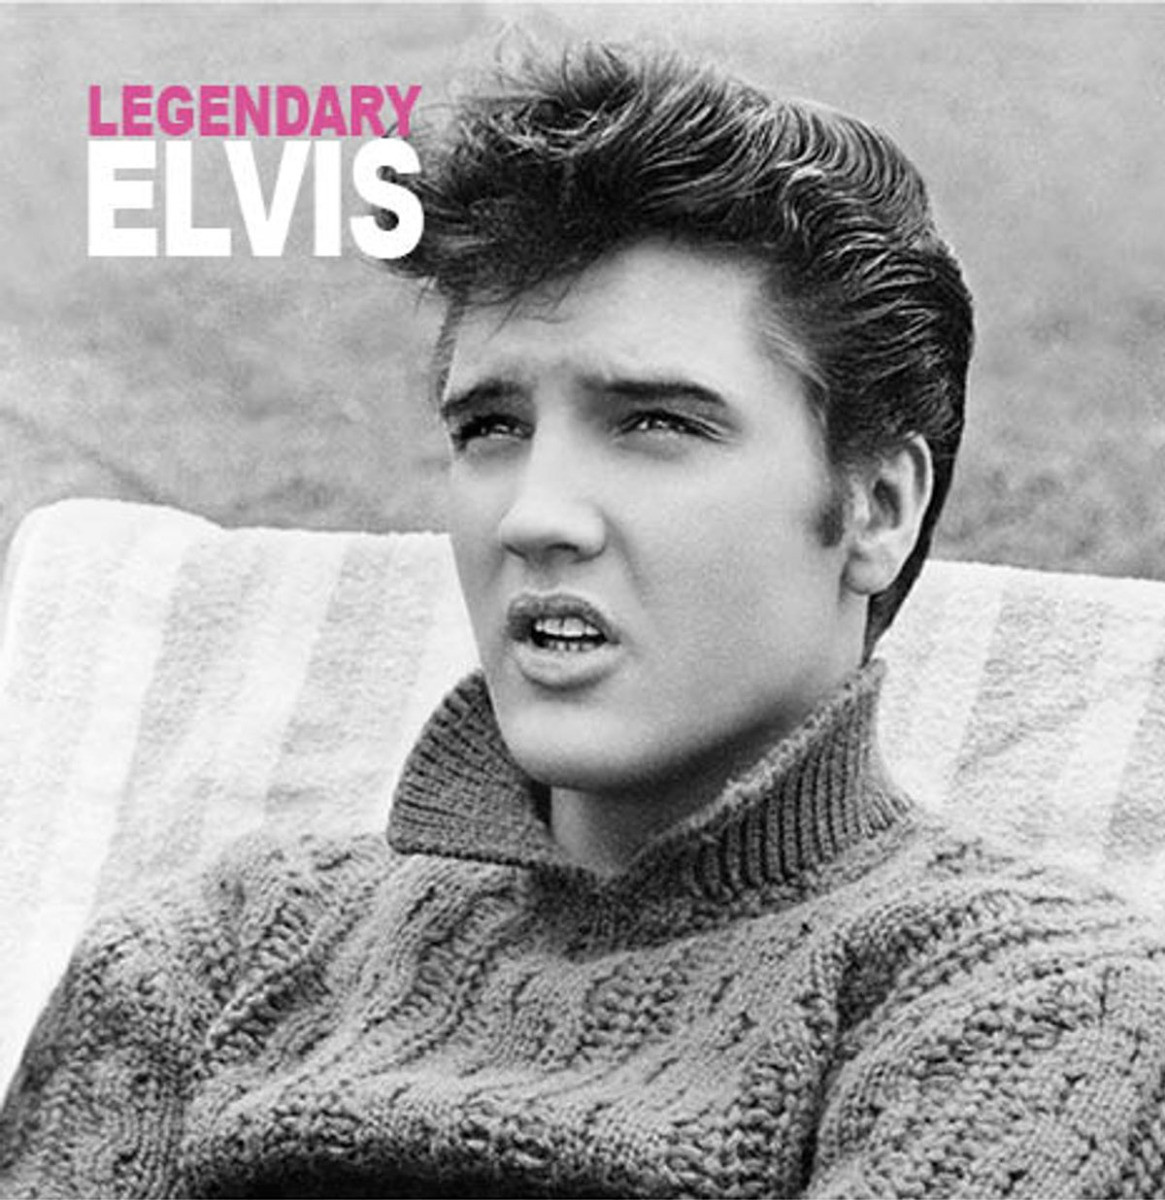 Elvis Presley - Legendary Elvis by Elvisone CD